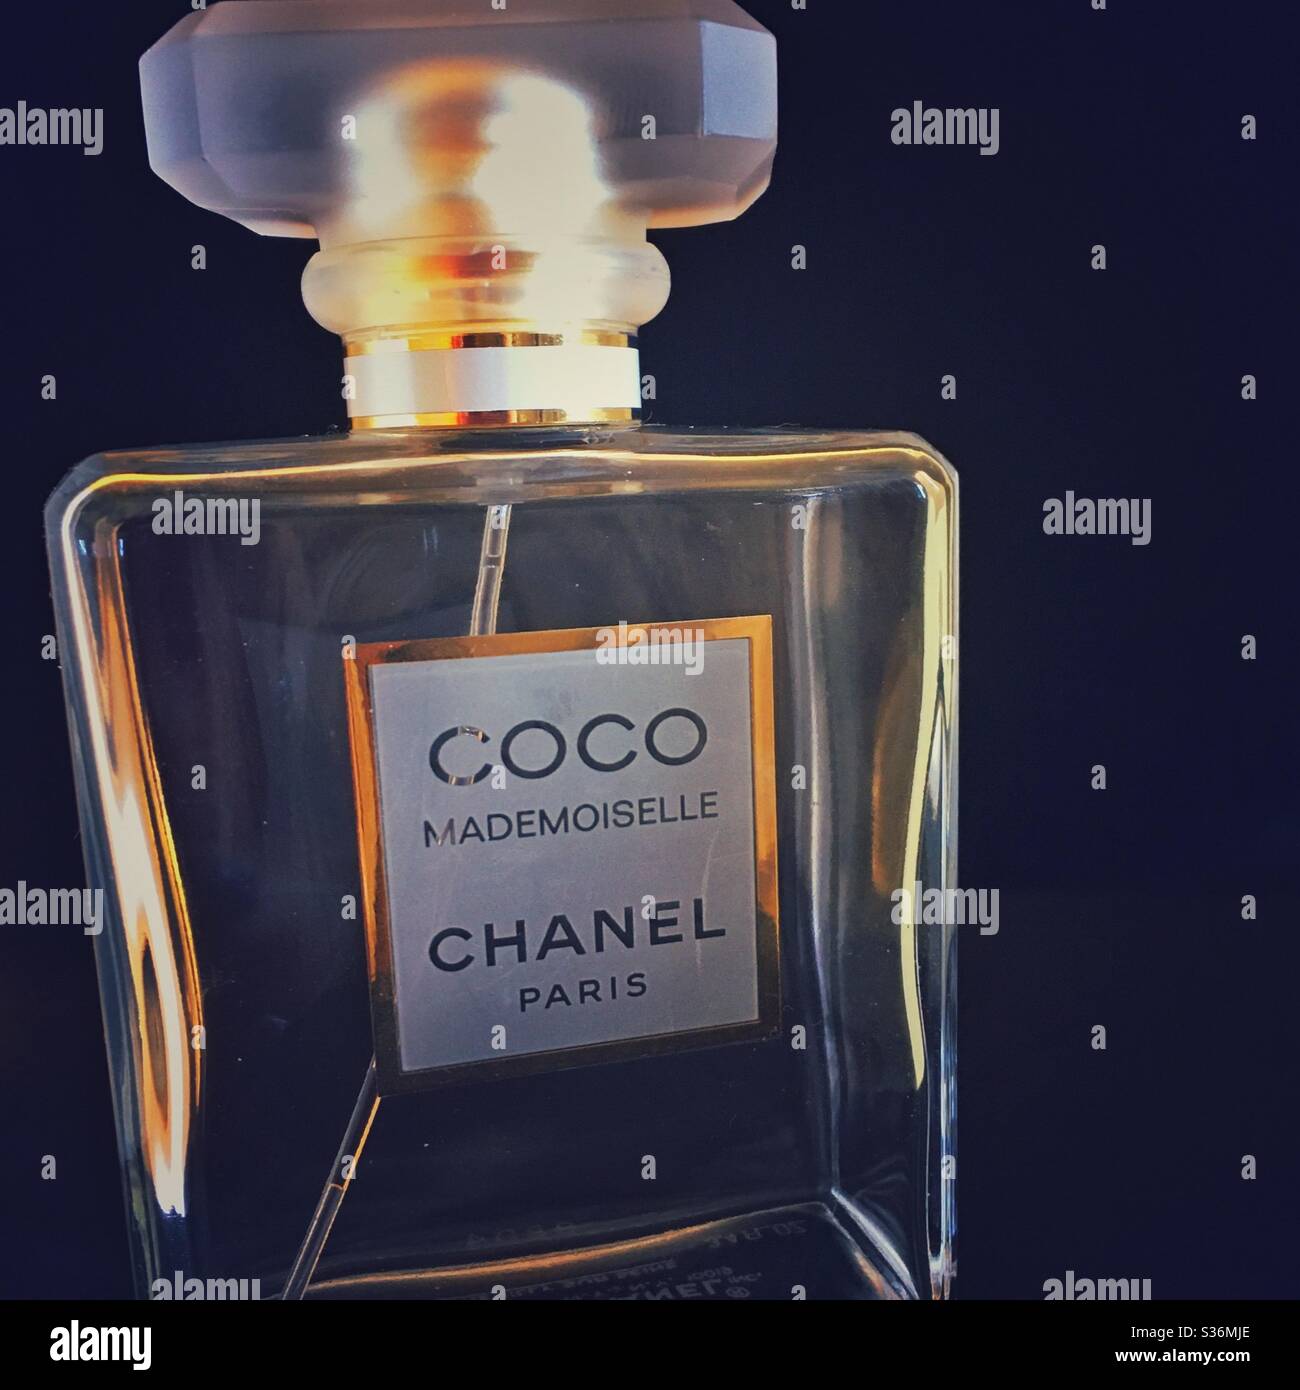 coco chanel purse perfume